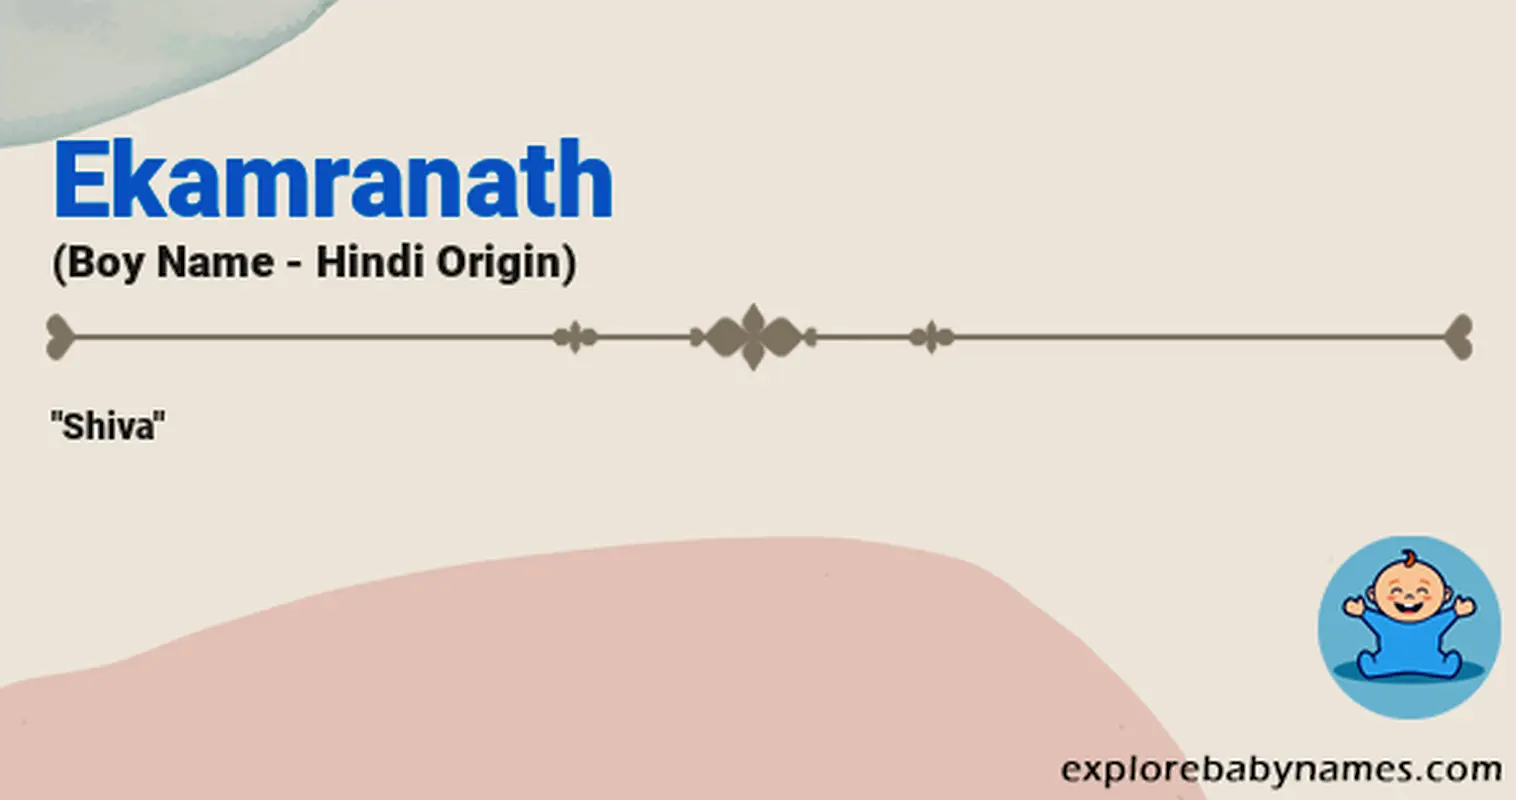 Meaning of Ekamranath